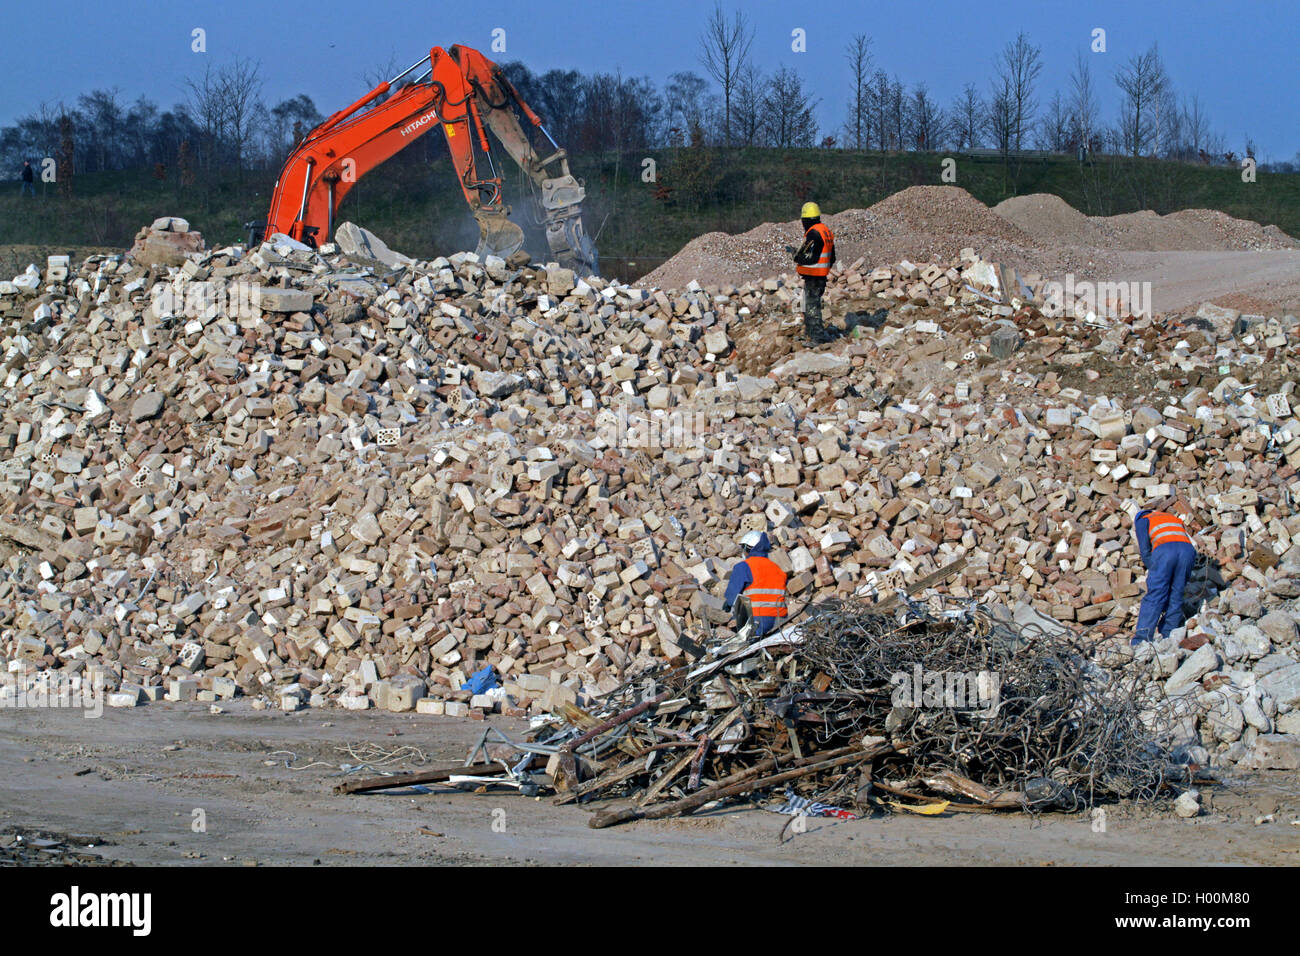 Recyclage des matériaux de construction après démolition, Allemagne Banque D'Images